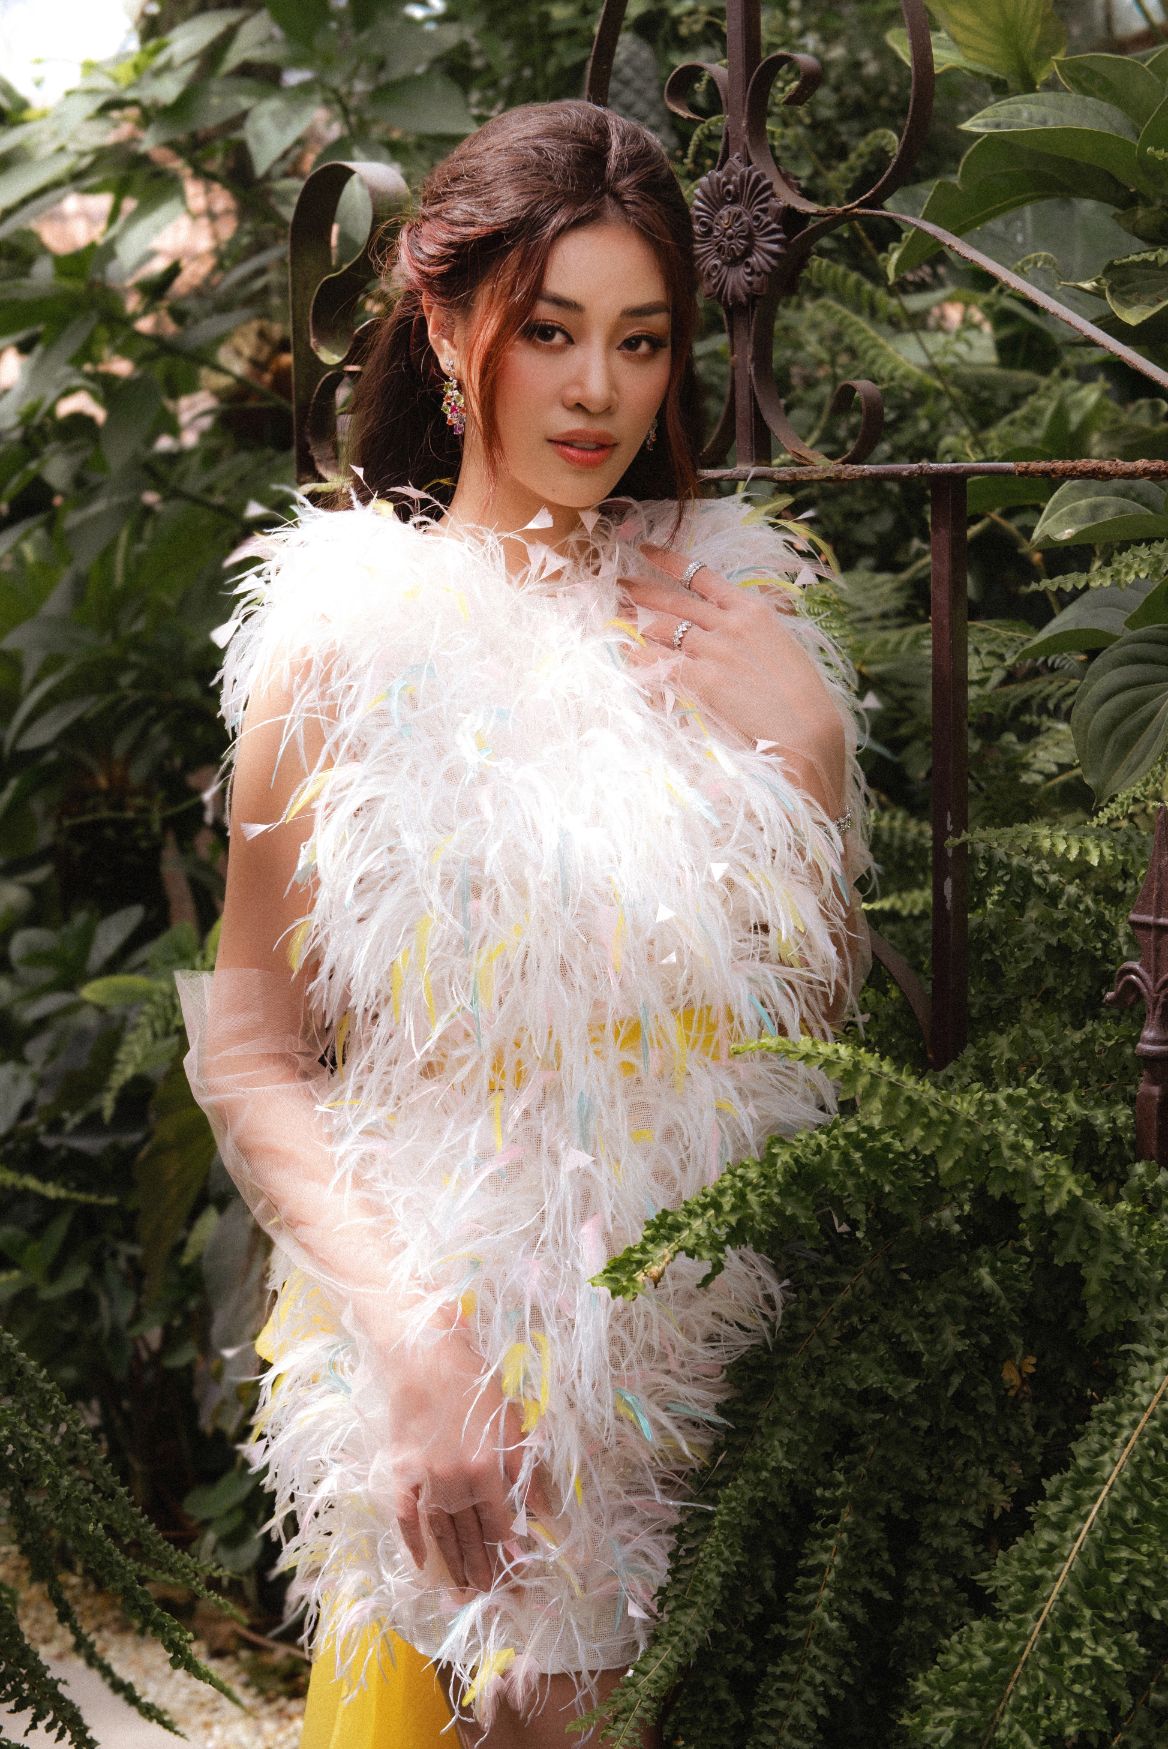 Hoa hậu Khánh Vân Hoa hậu Khánh Vân ngọt ngào trong bộ ảnh mang âm hưởng cổ tích